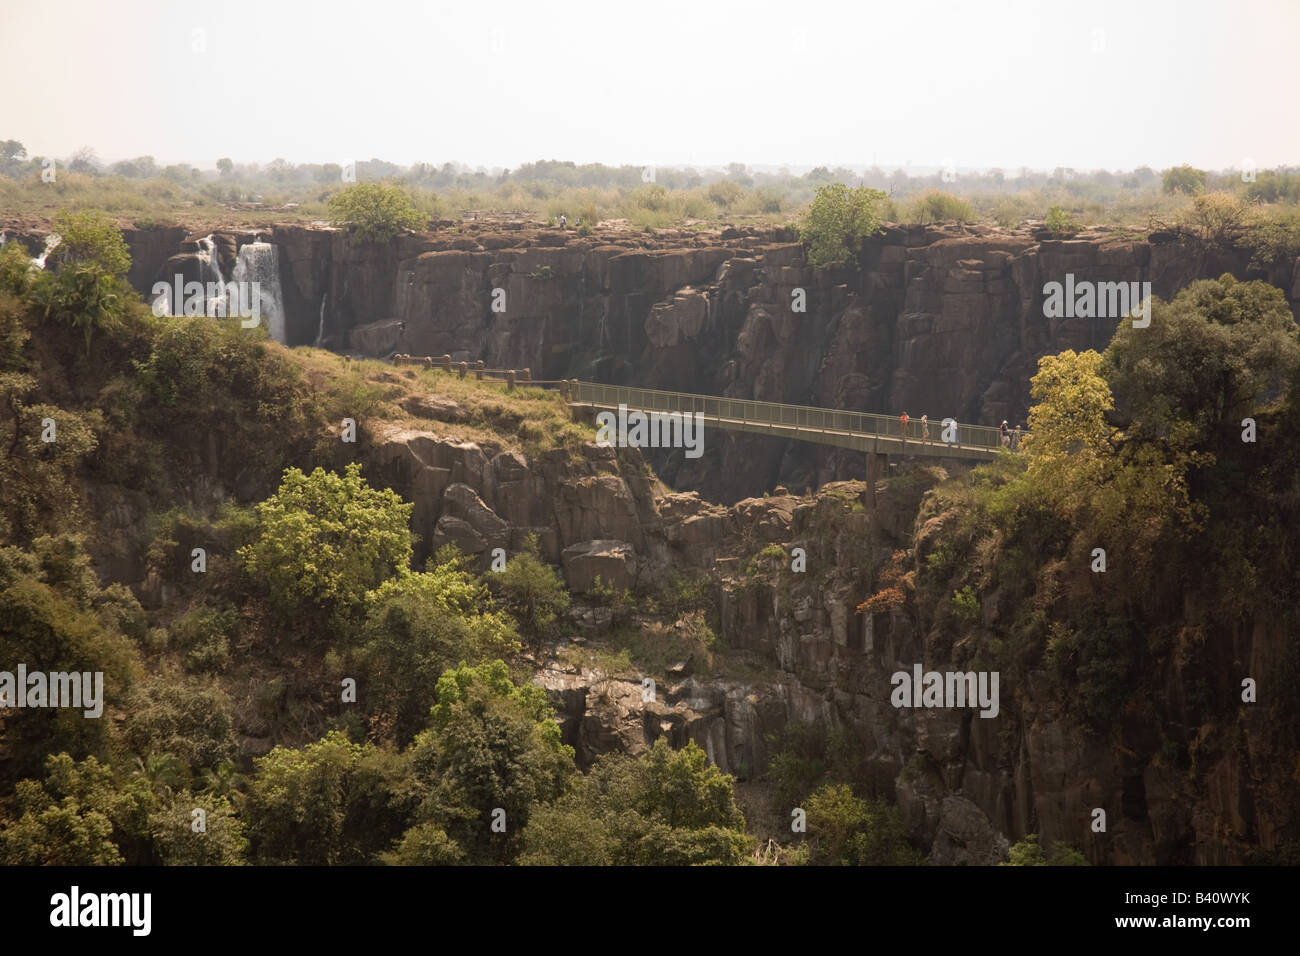 Coltello bordo ponte a Victoria Falls livingstone zambia africa Foto Stock